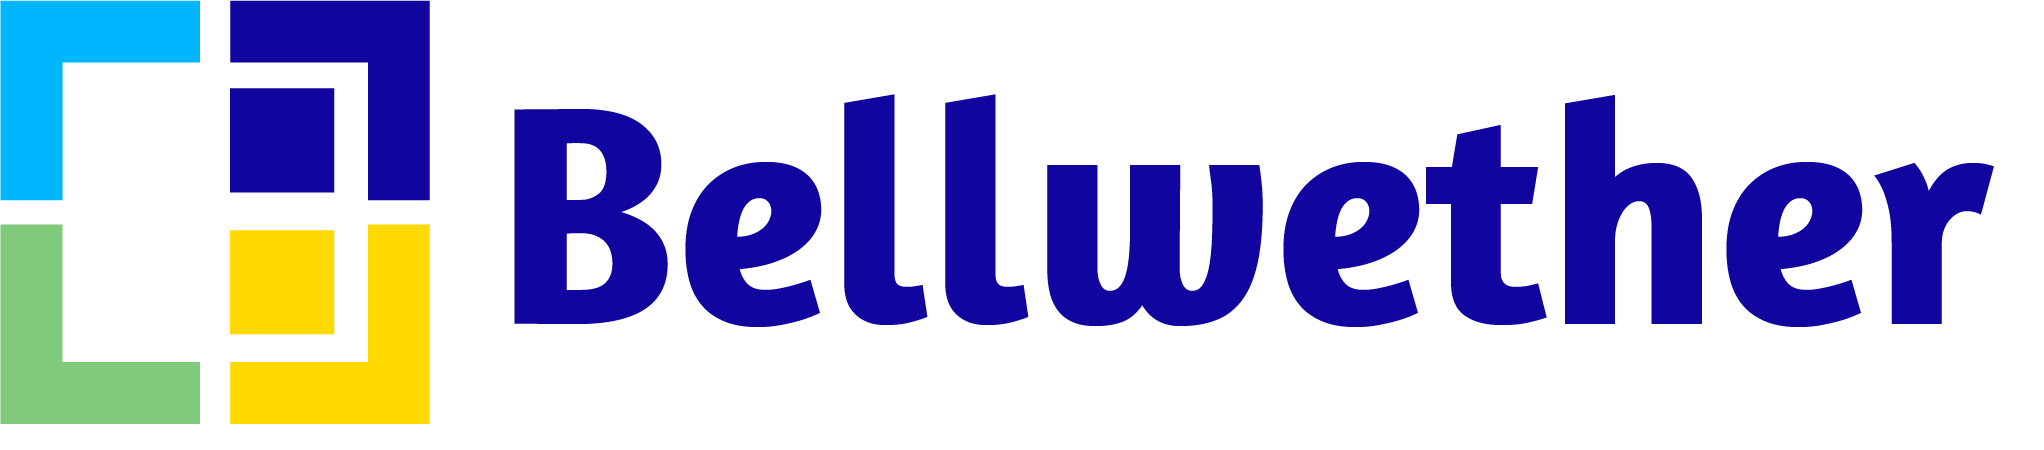 Bellwether Software Logo